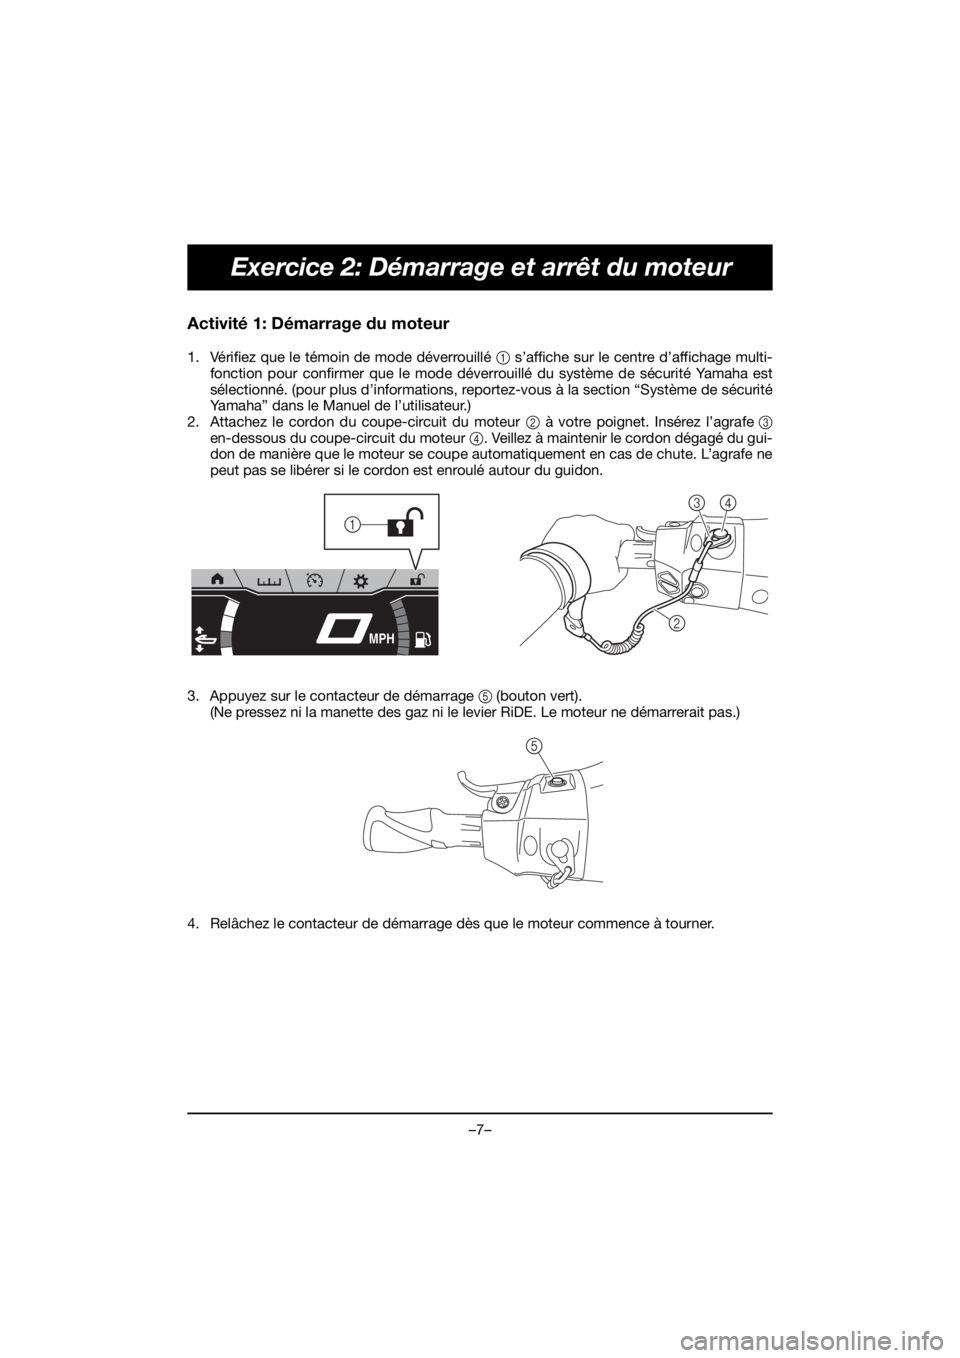 YAMAHA FX HO 2019  Manuale duso (in Italian) –7–
Exercice 2: Démarrage et arrêt du moteur
Activité 1: Démarrage du moteur
1. Vérifiez que le témoin de mode déverrouillé 1 s’affiche sur le centre d’affichage multi-
fonction pour c